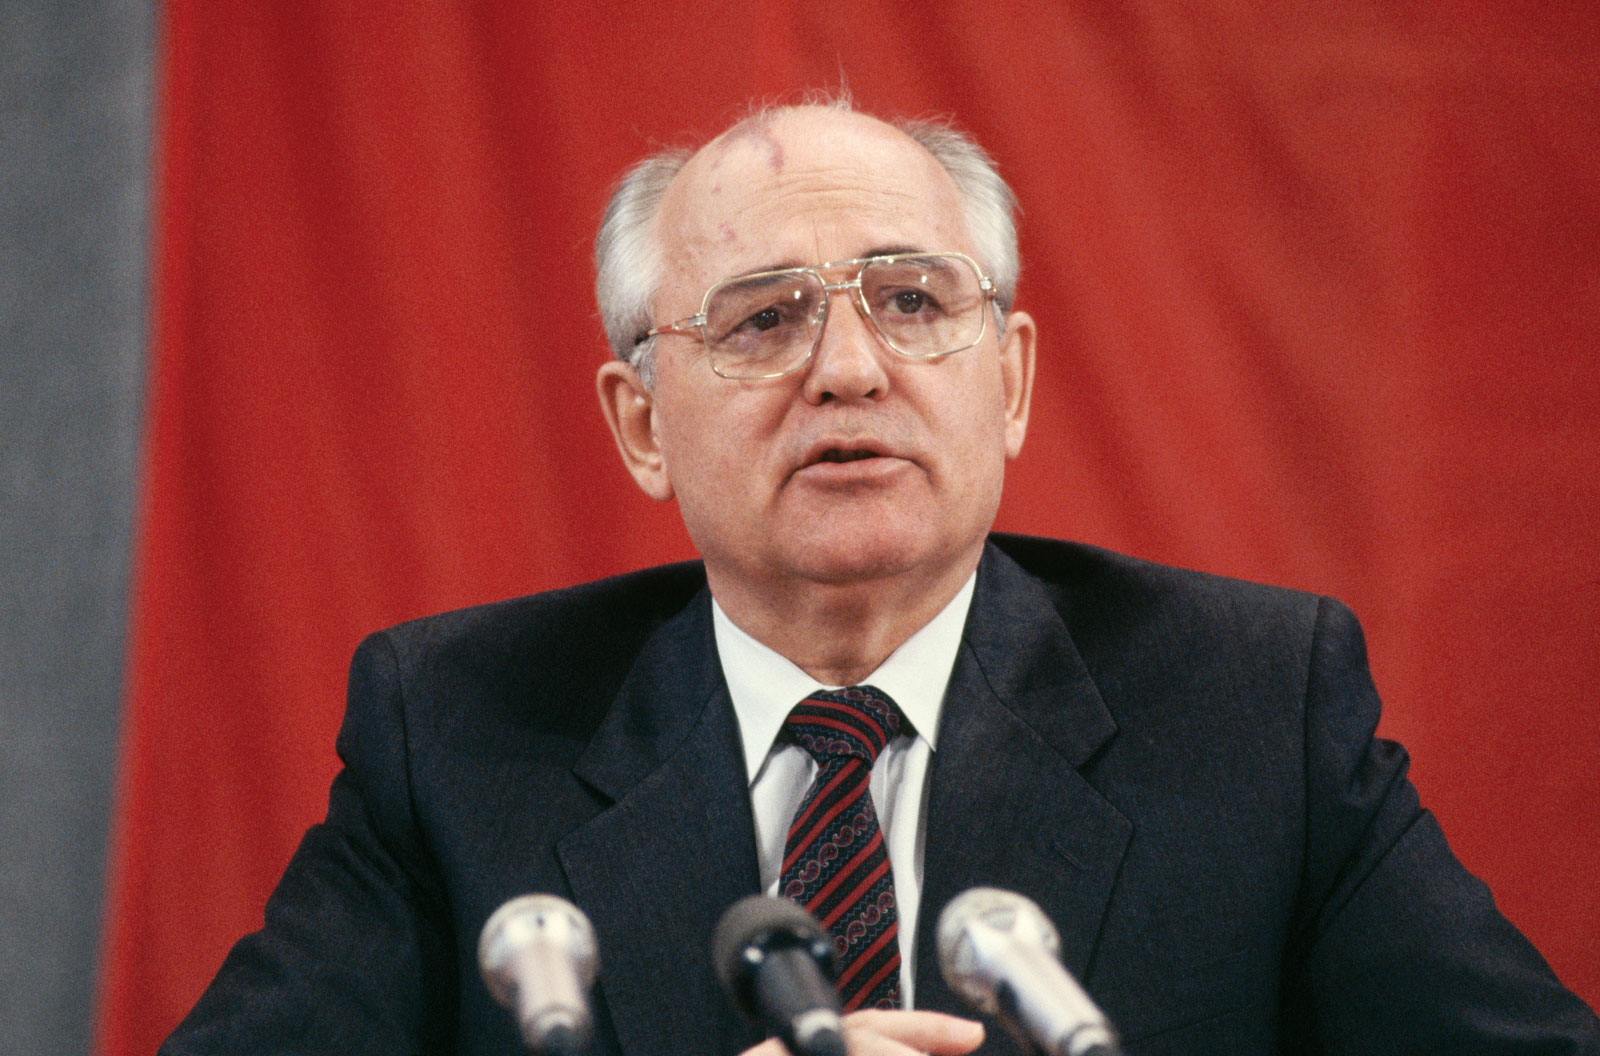 Проклятия заслуживает и Горбачёв, и вся советская русофобская система